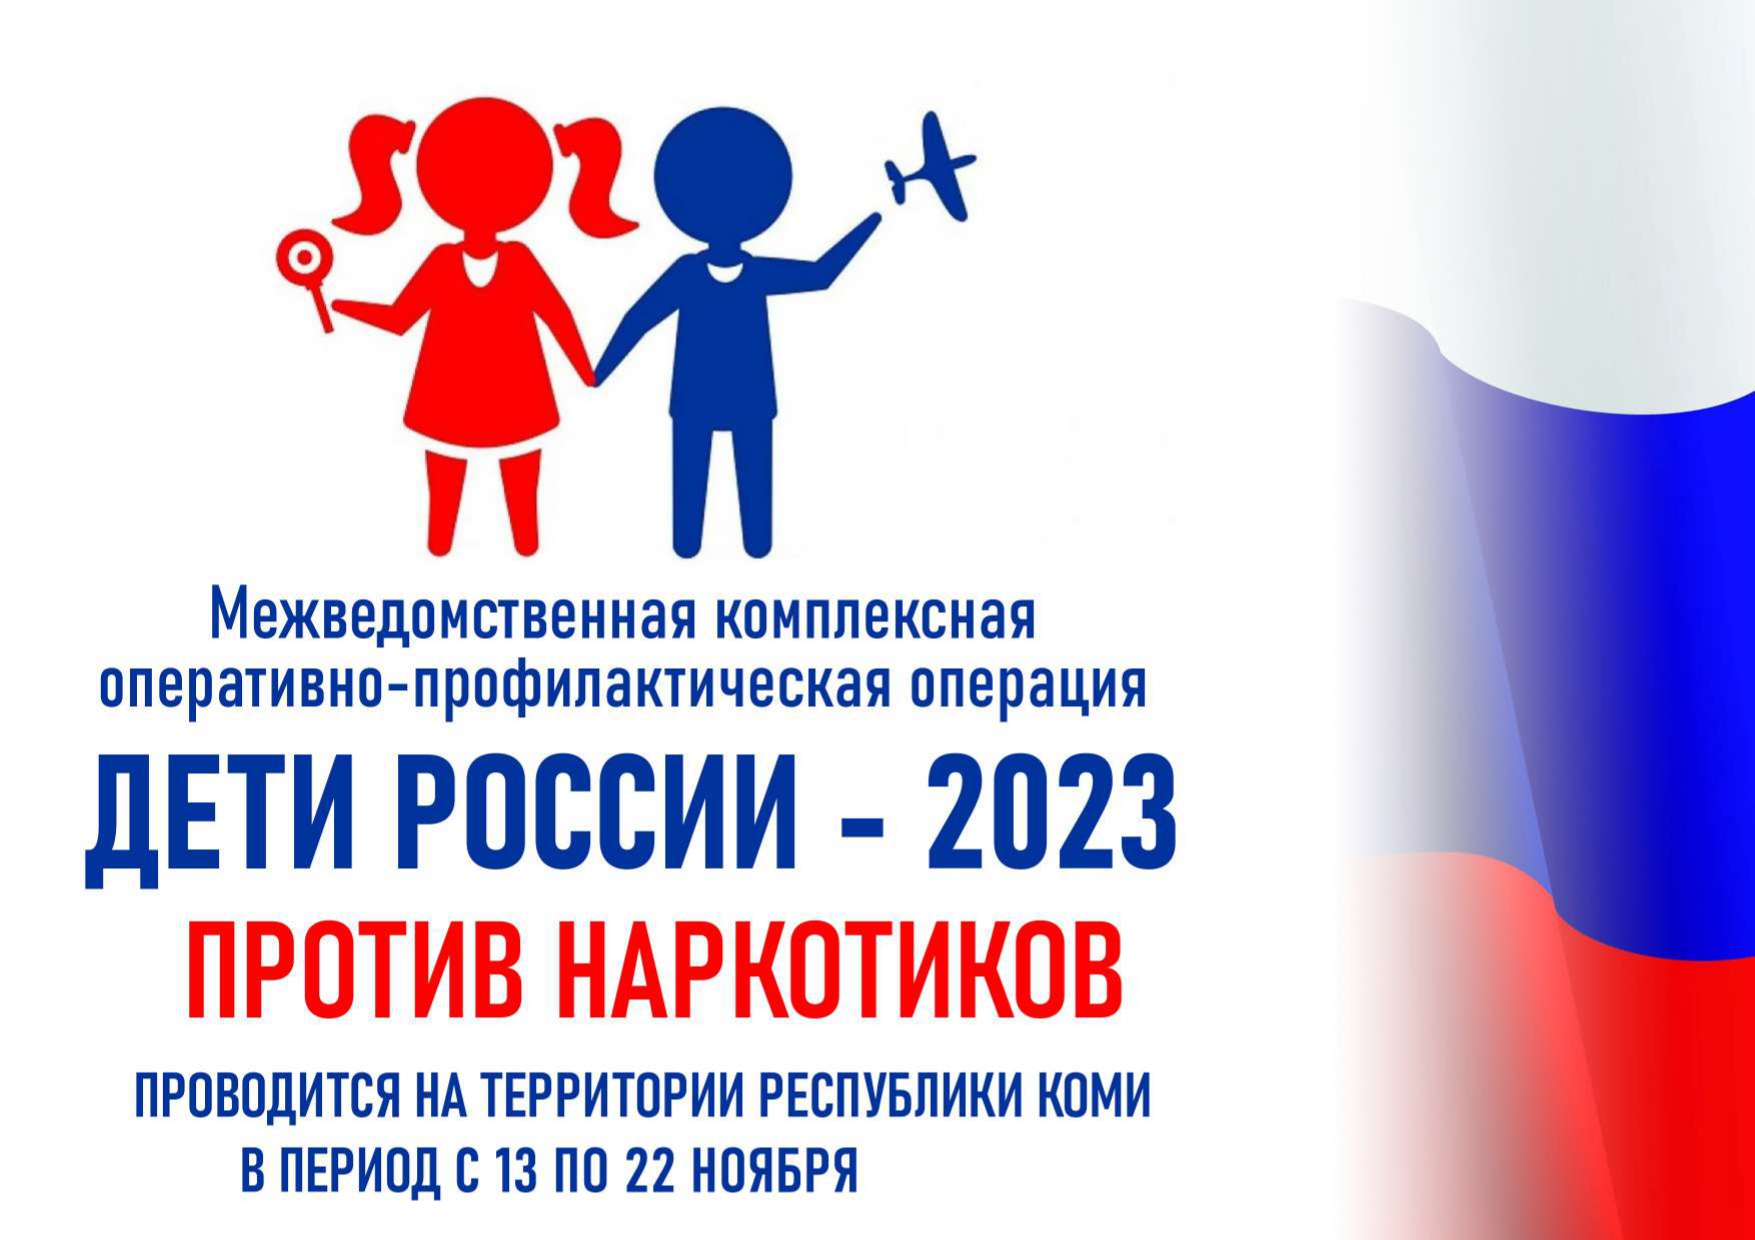 Межведомственная комплексная оперативно-профилактическая операция «Дети России - 2023».